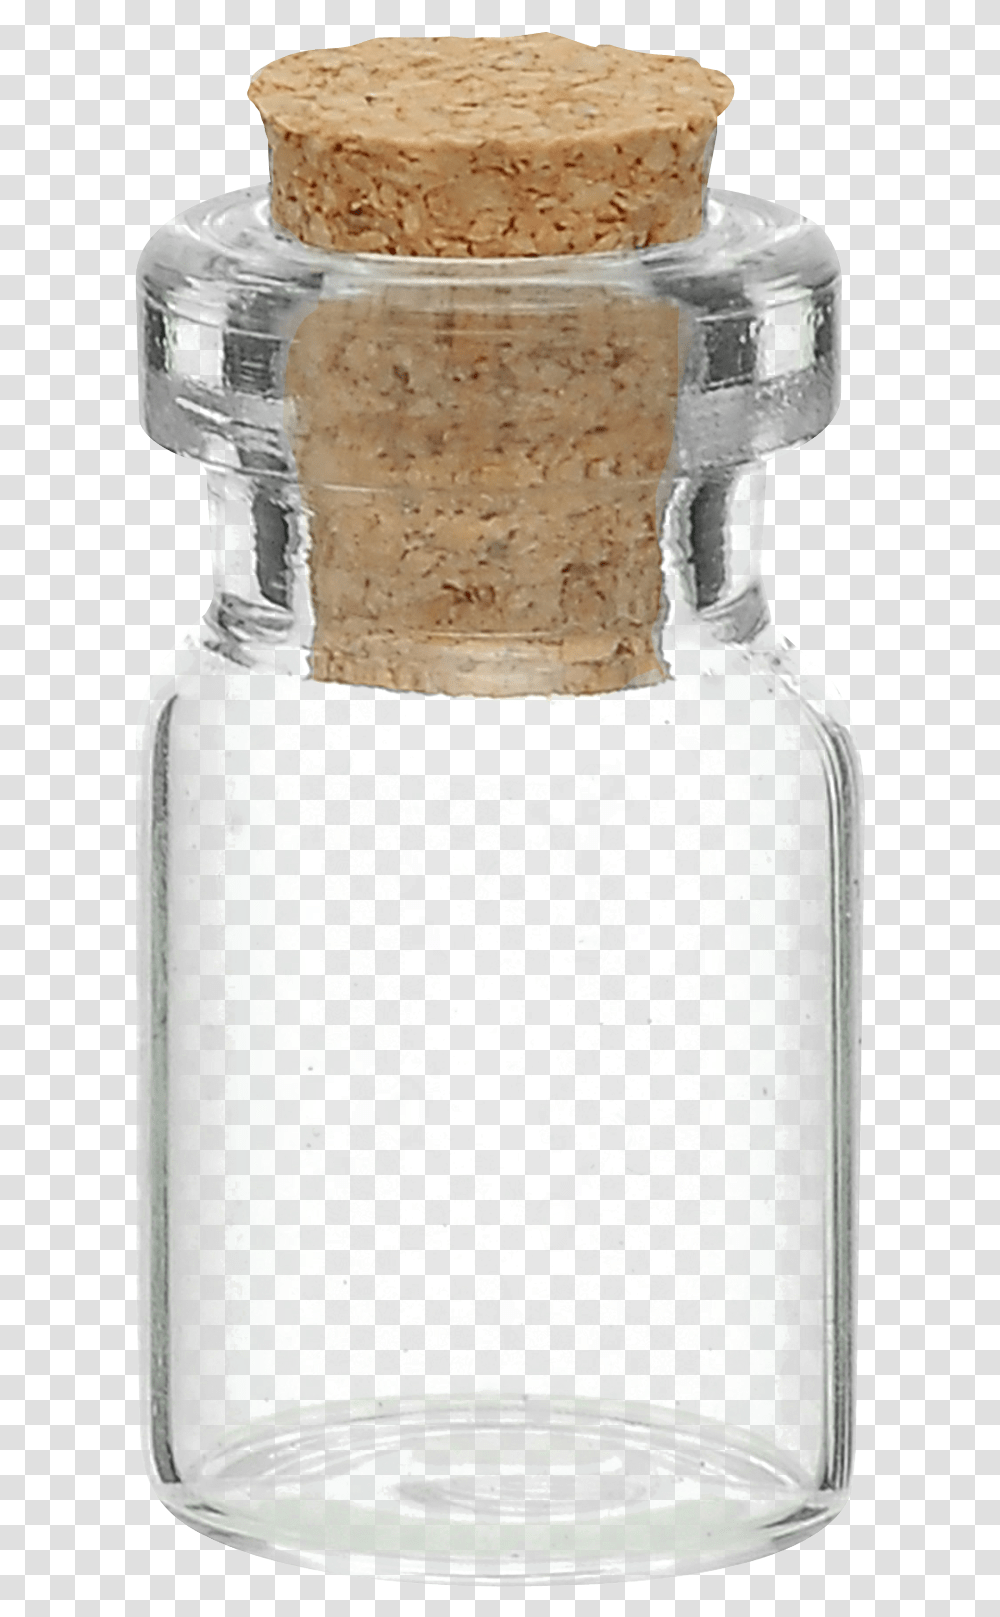 Glass Jar Glass Bottle, Milk, Beverage, Drink, Wedding Cake Transparent Png